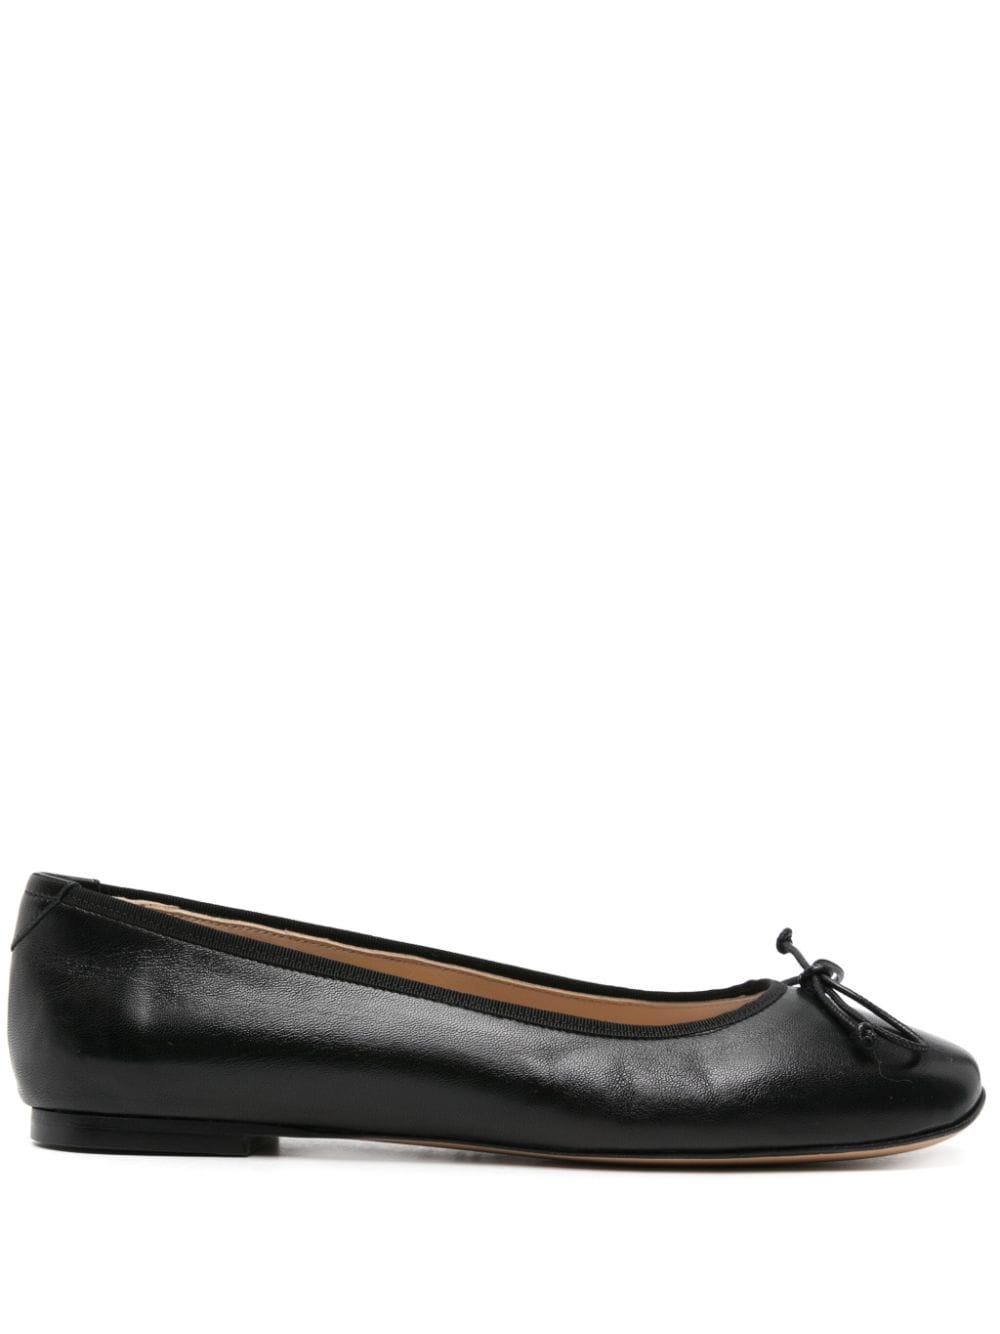 Casadei bow-detail leather ballerina shoes - Black von Casadei